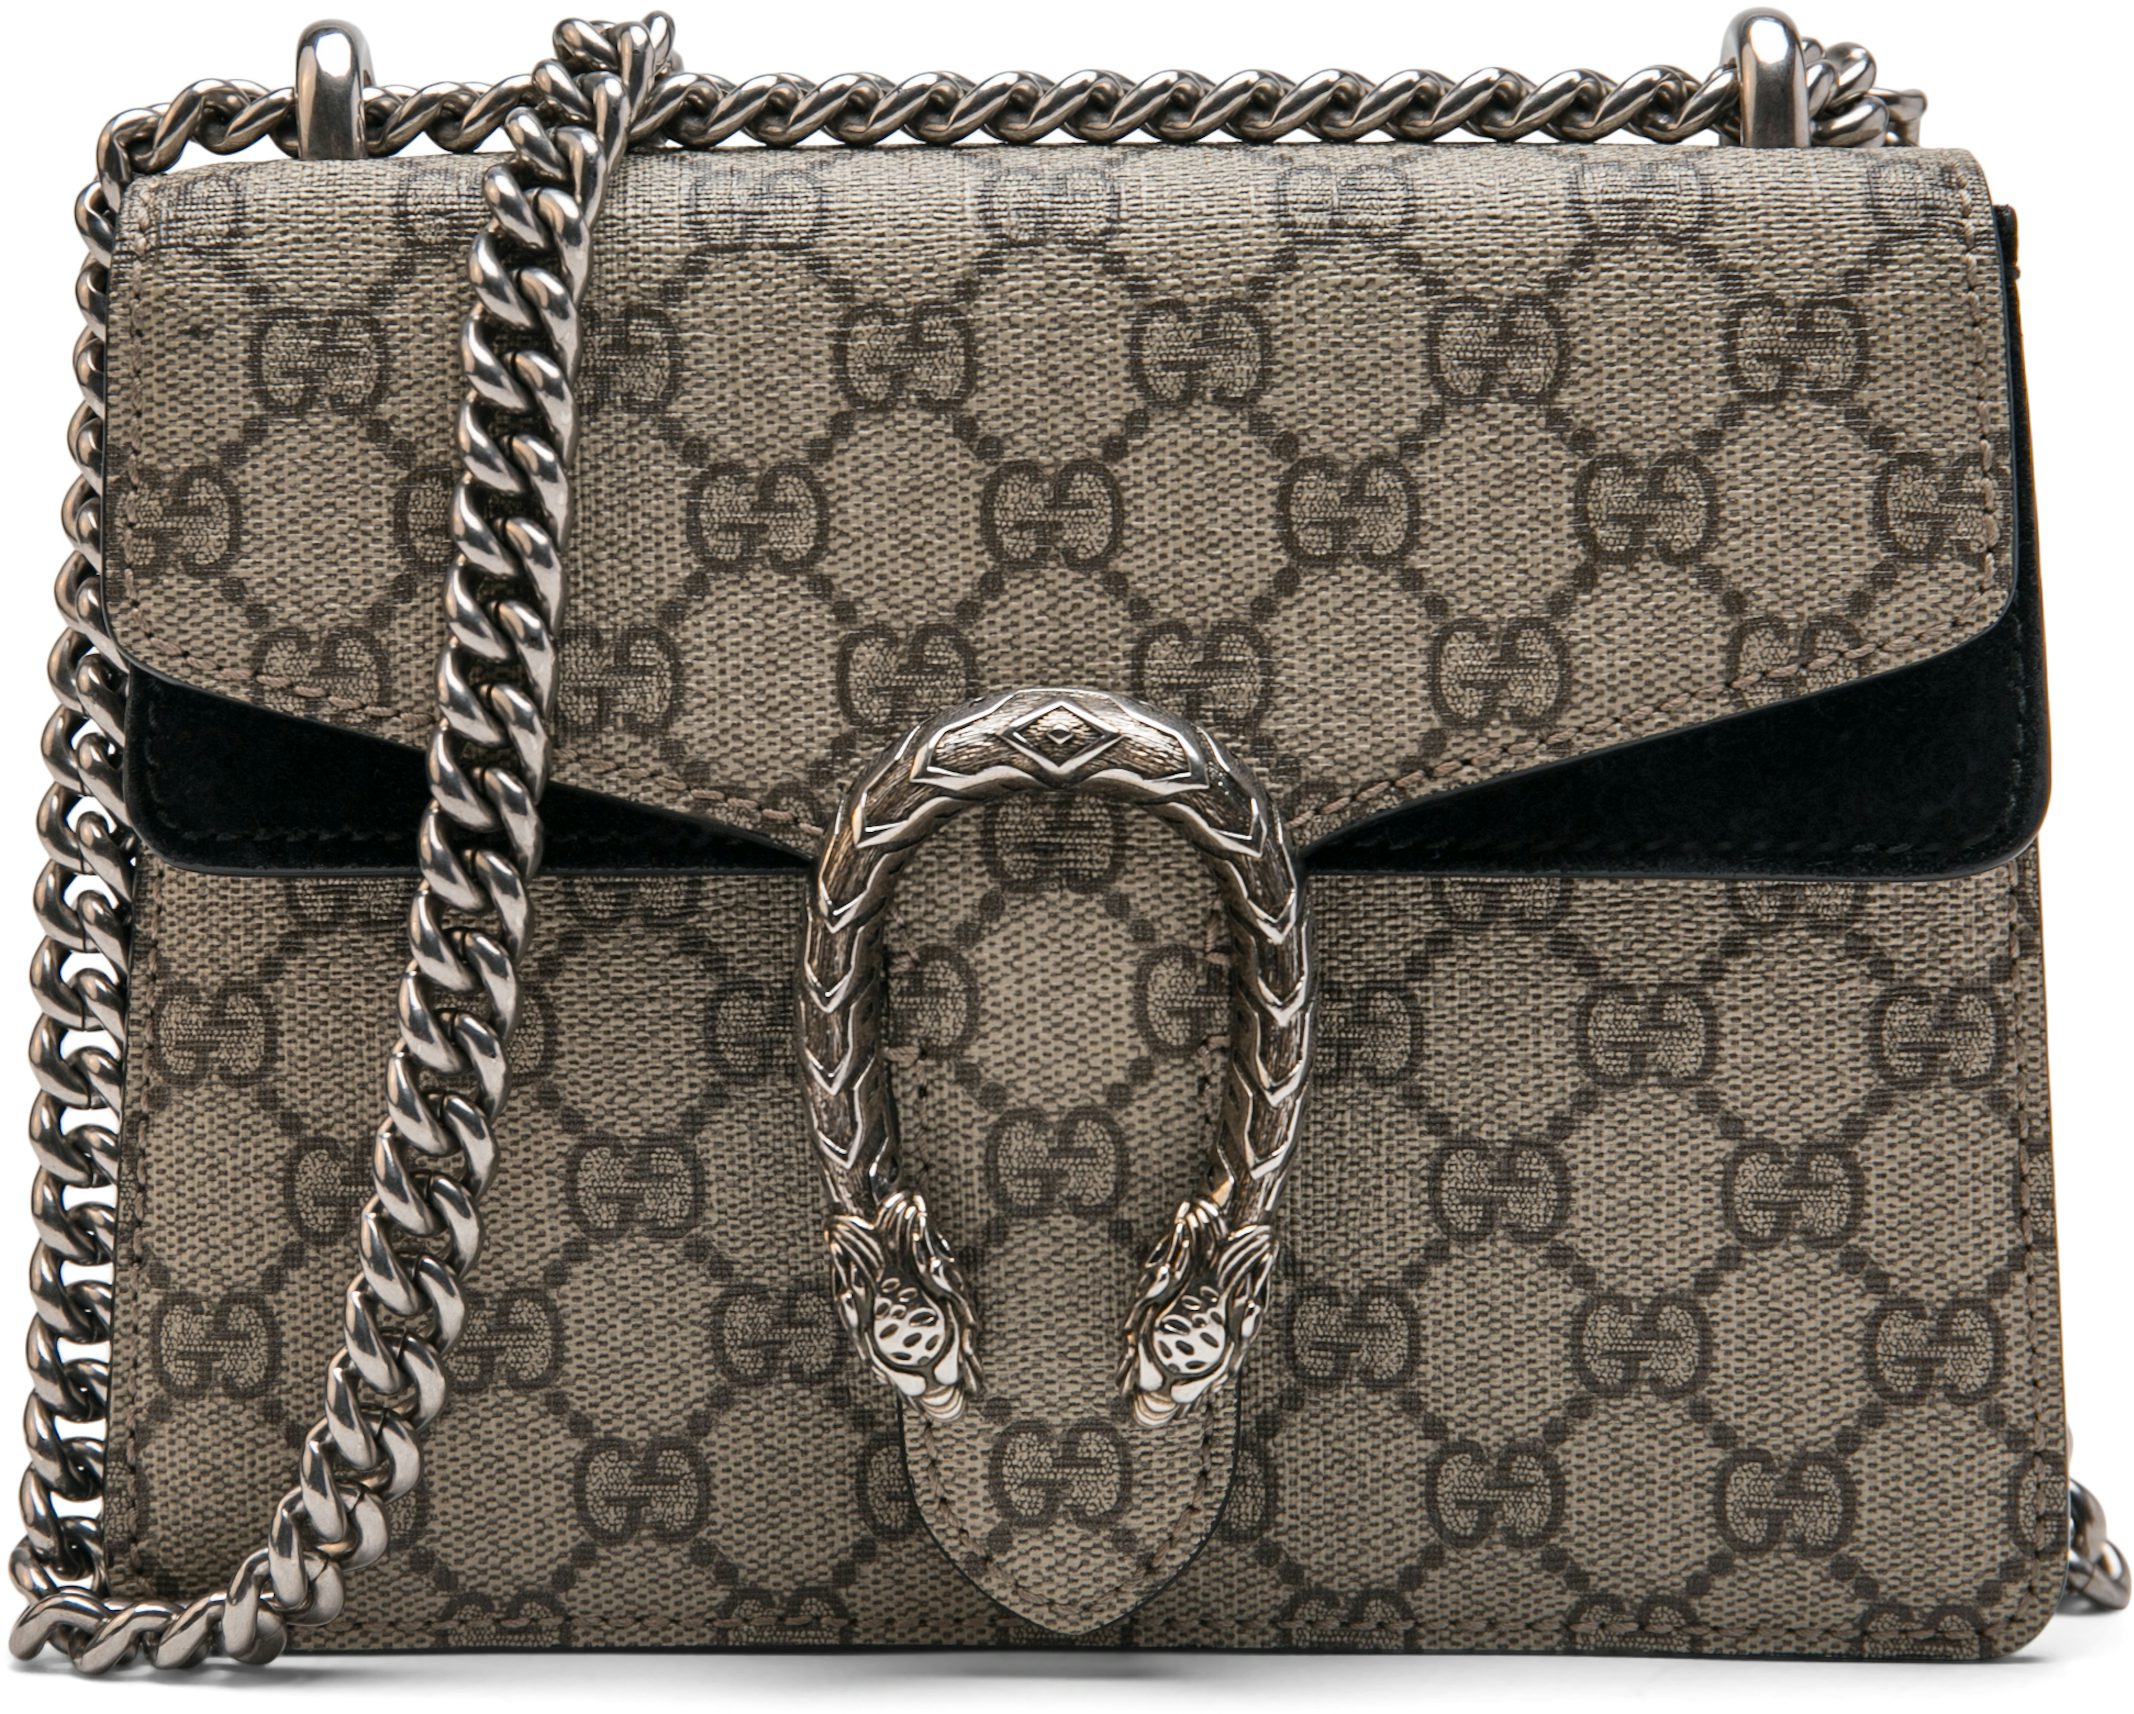 Gucci Dionysus GG Supreme Mini Bag In Brown 421970 Size 20cm - Colestore.Ru  in 2023